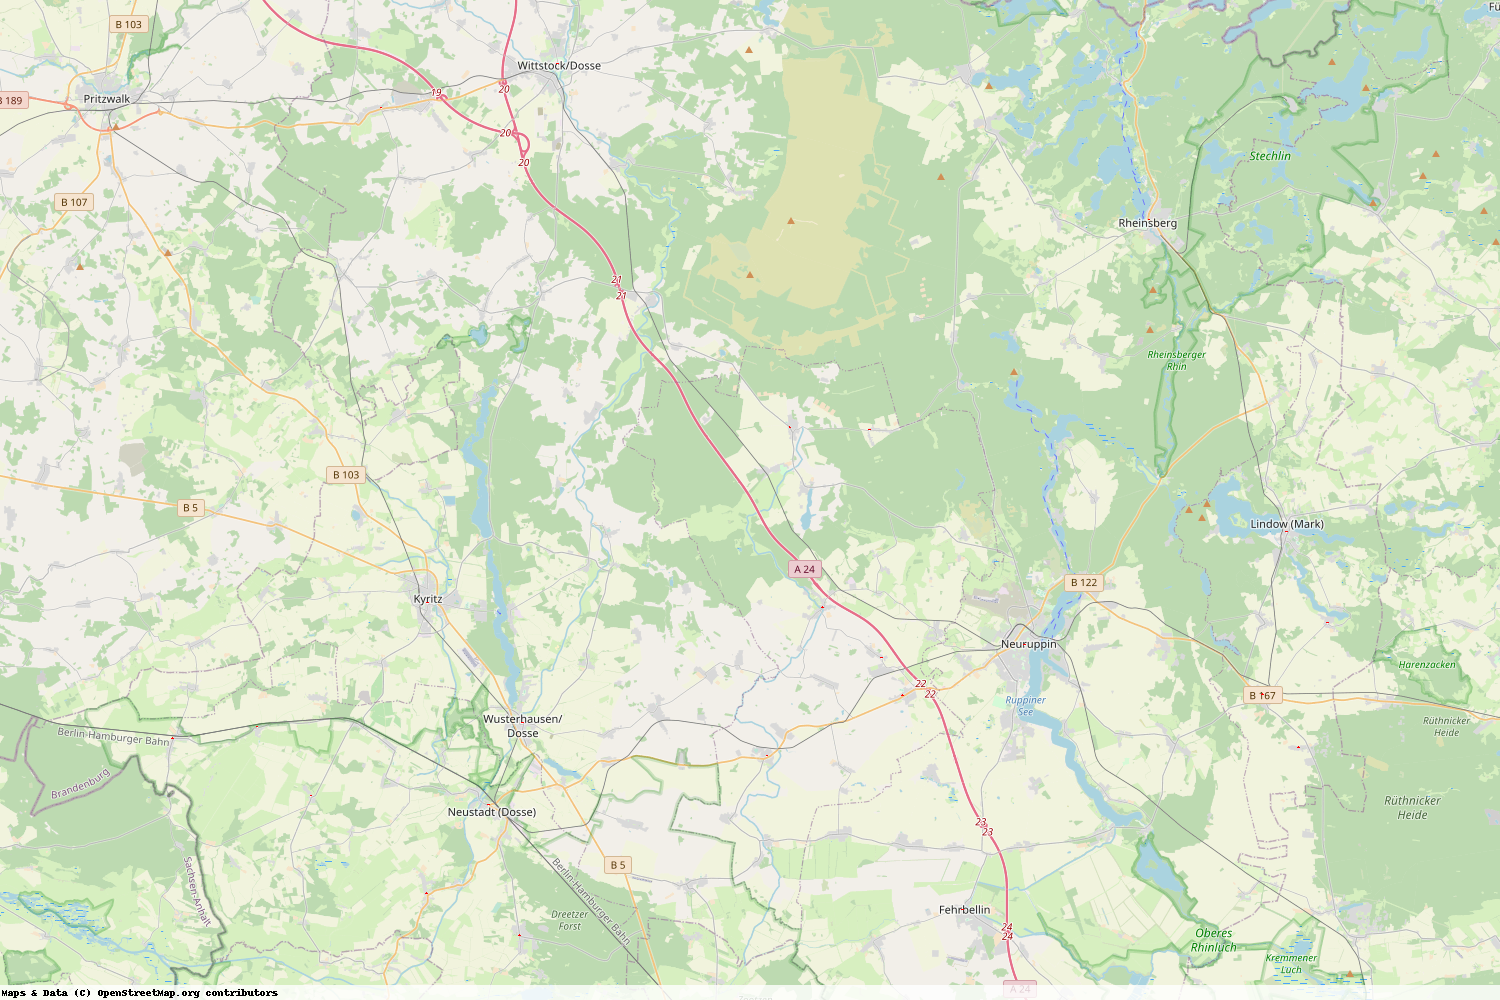 Ist gerade Stromausfall in Brandenburg - Ostprignitz-Ruppin?